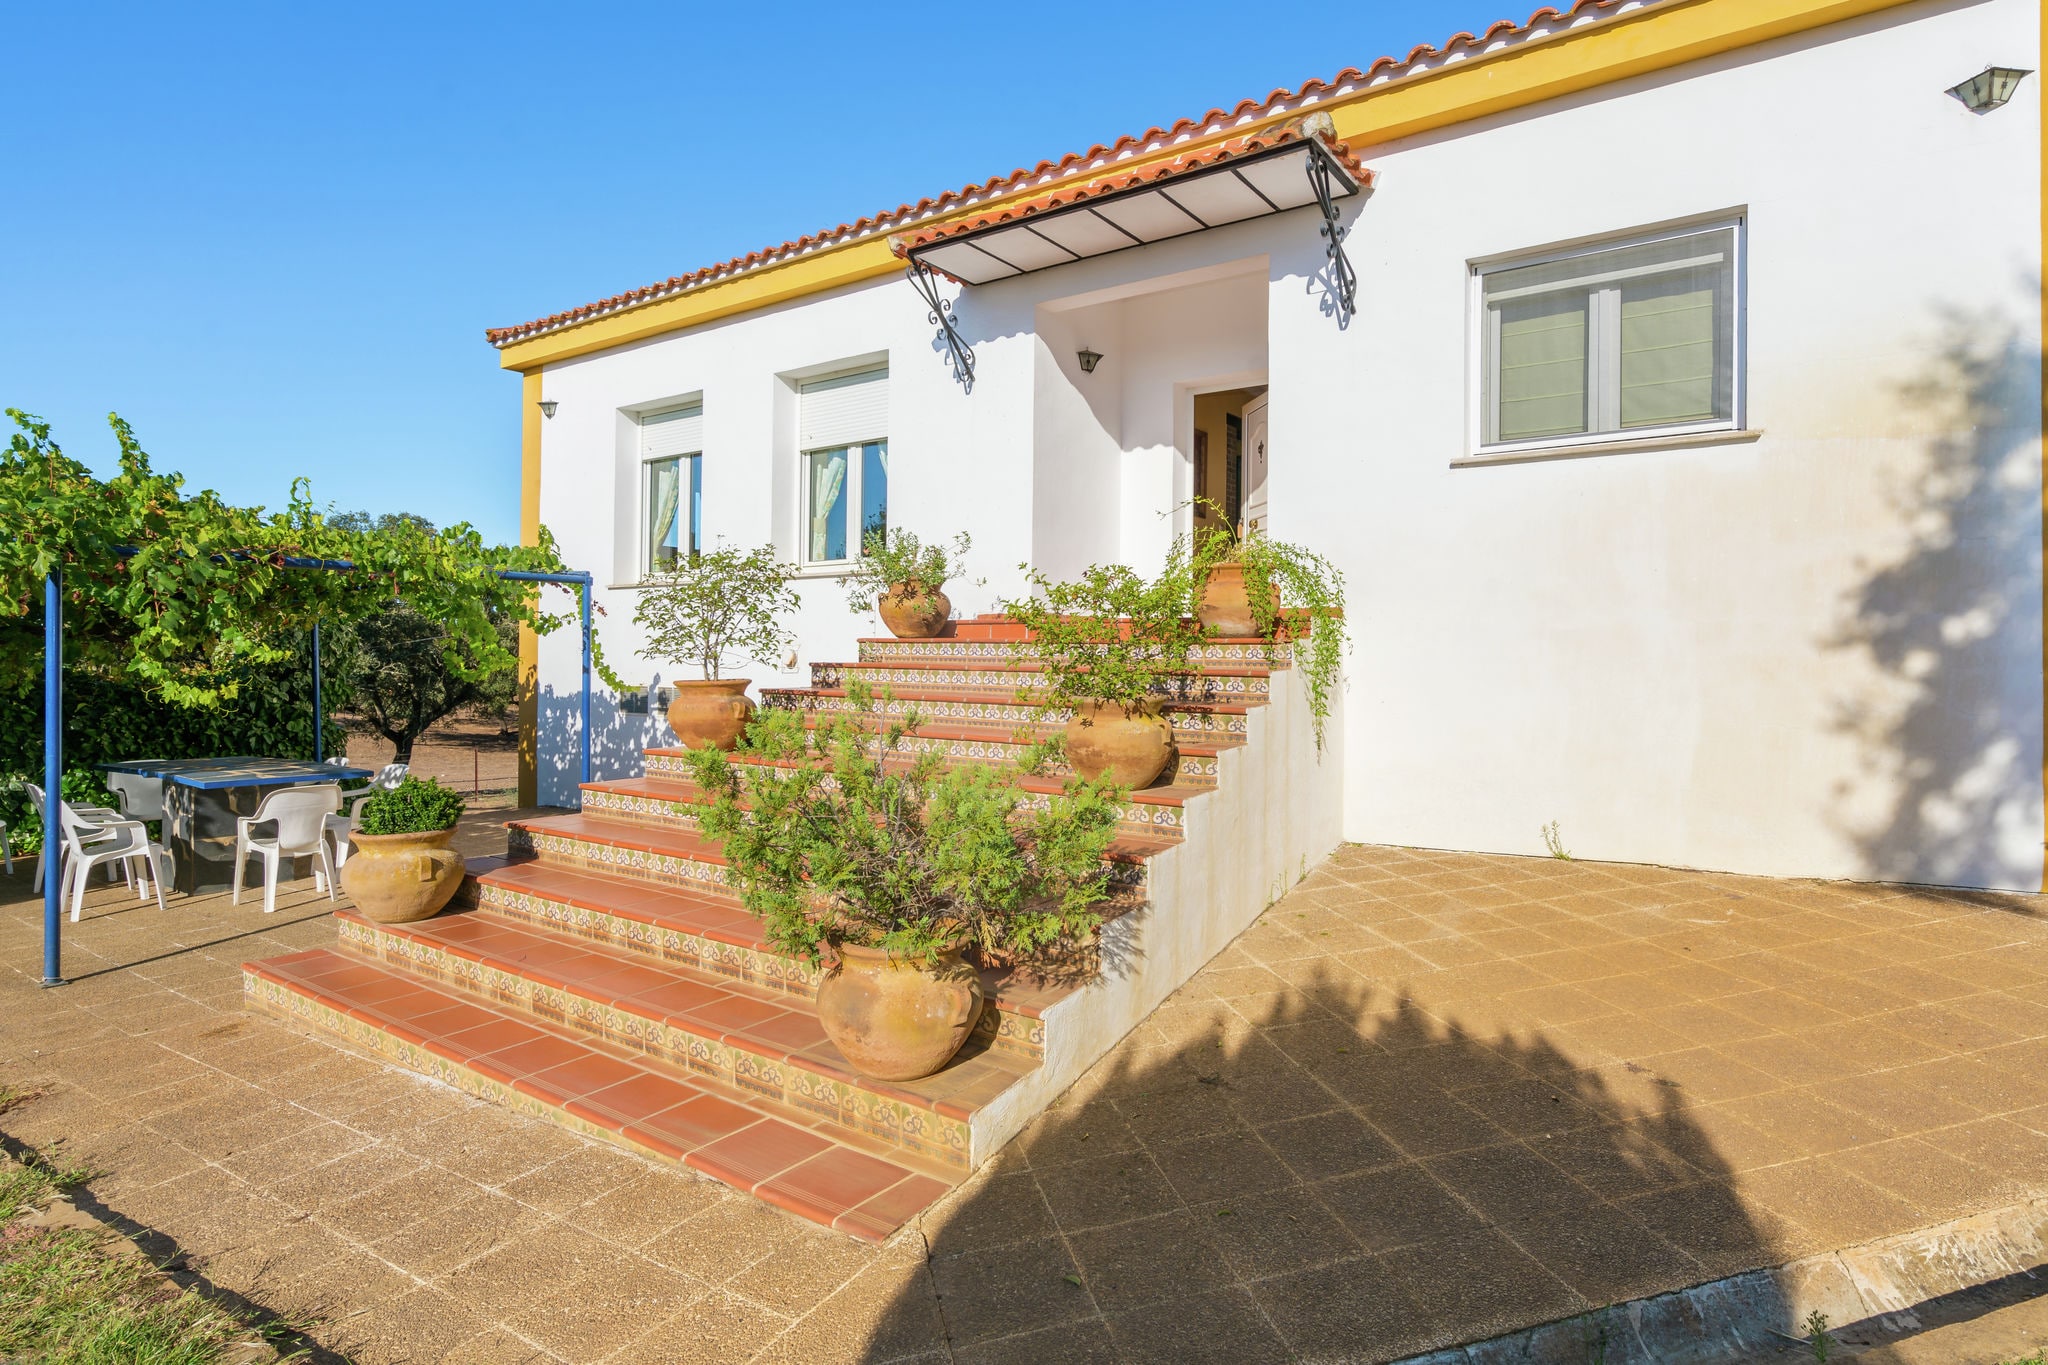 Maison de vacances cosy avec terrasse à Estrémadure, Espagne